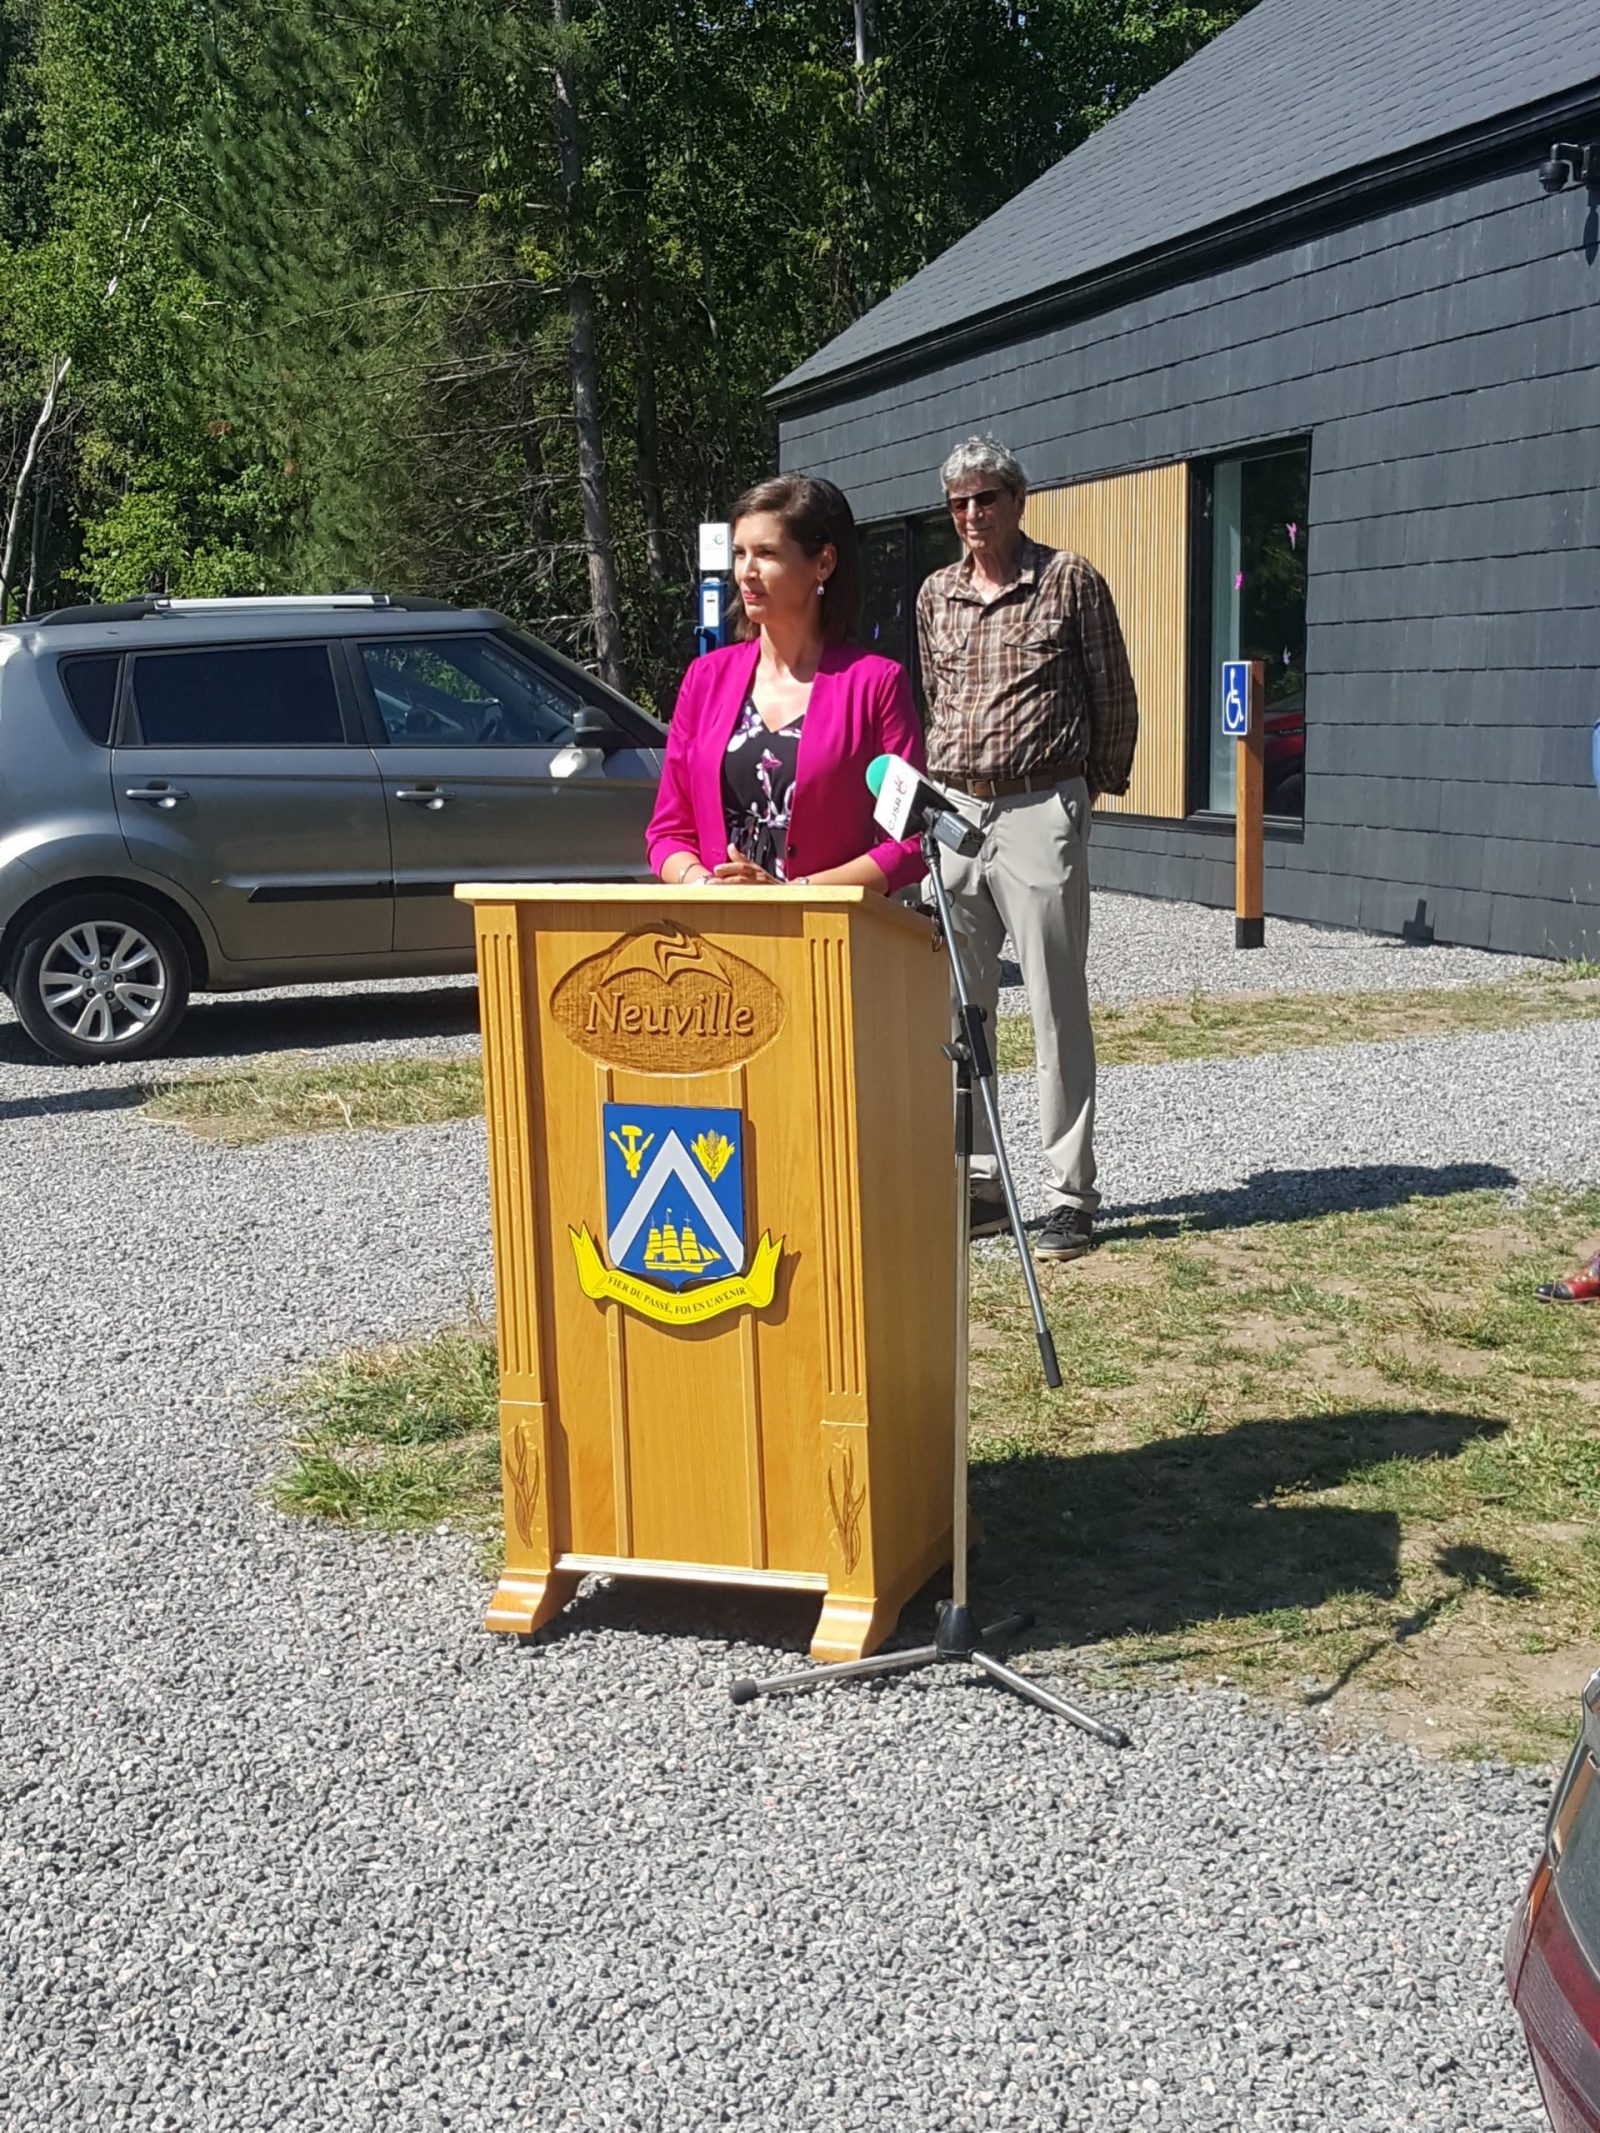 LLa vice-première ministre du Québec, Mme Geneviève Guuilbault, s'est adressée aux participants lors de l'inauguration du pavillon d'accueil de la réserve naturelle du Marais-L.éon-Provancher. Ce site est situé dans sa circonscription électorale.